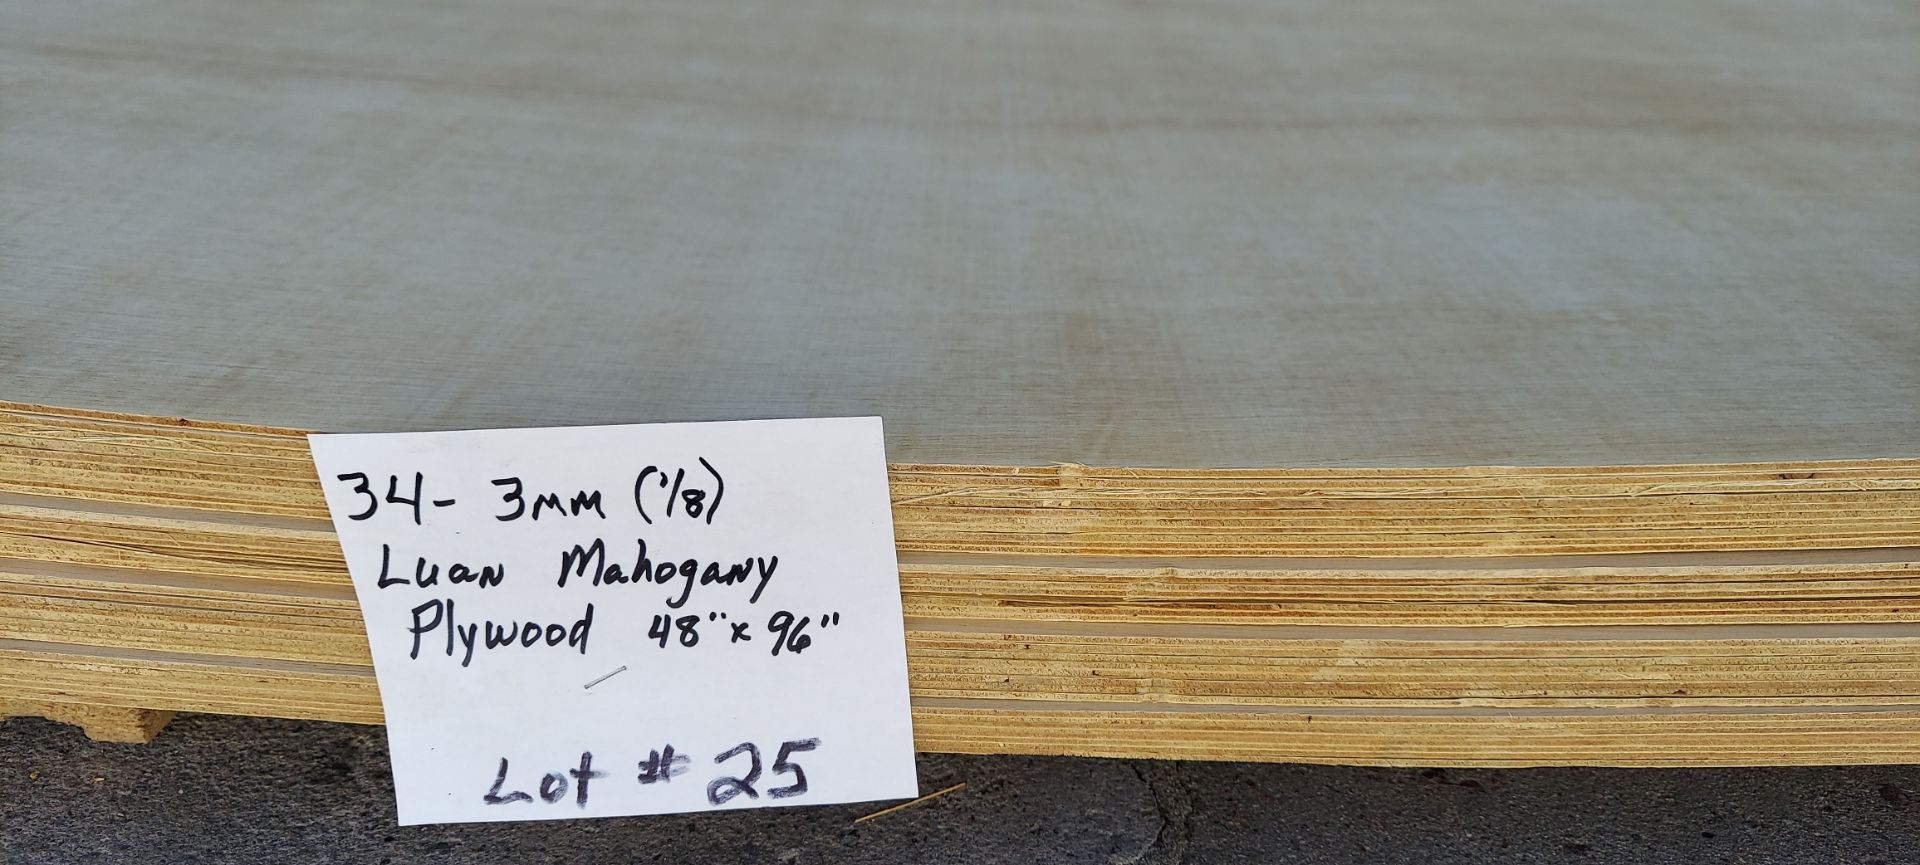 34 Sheets - 3mm (1/8) Luan Mahogany Plywood 48” X 96” - Image 4 of 4